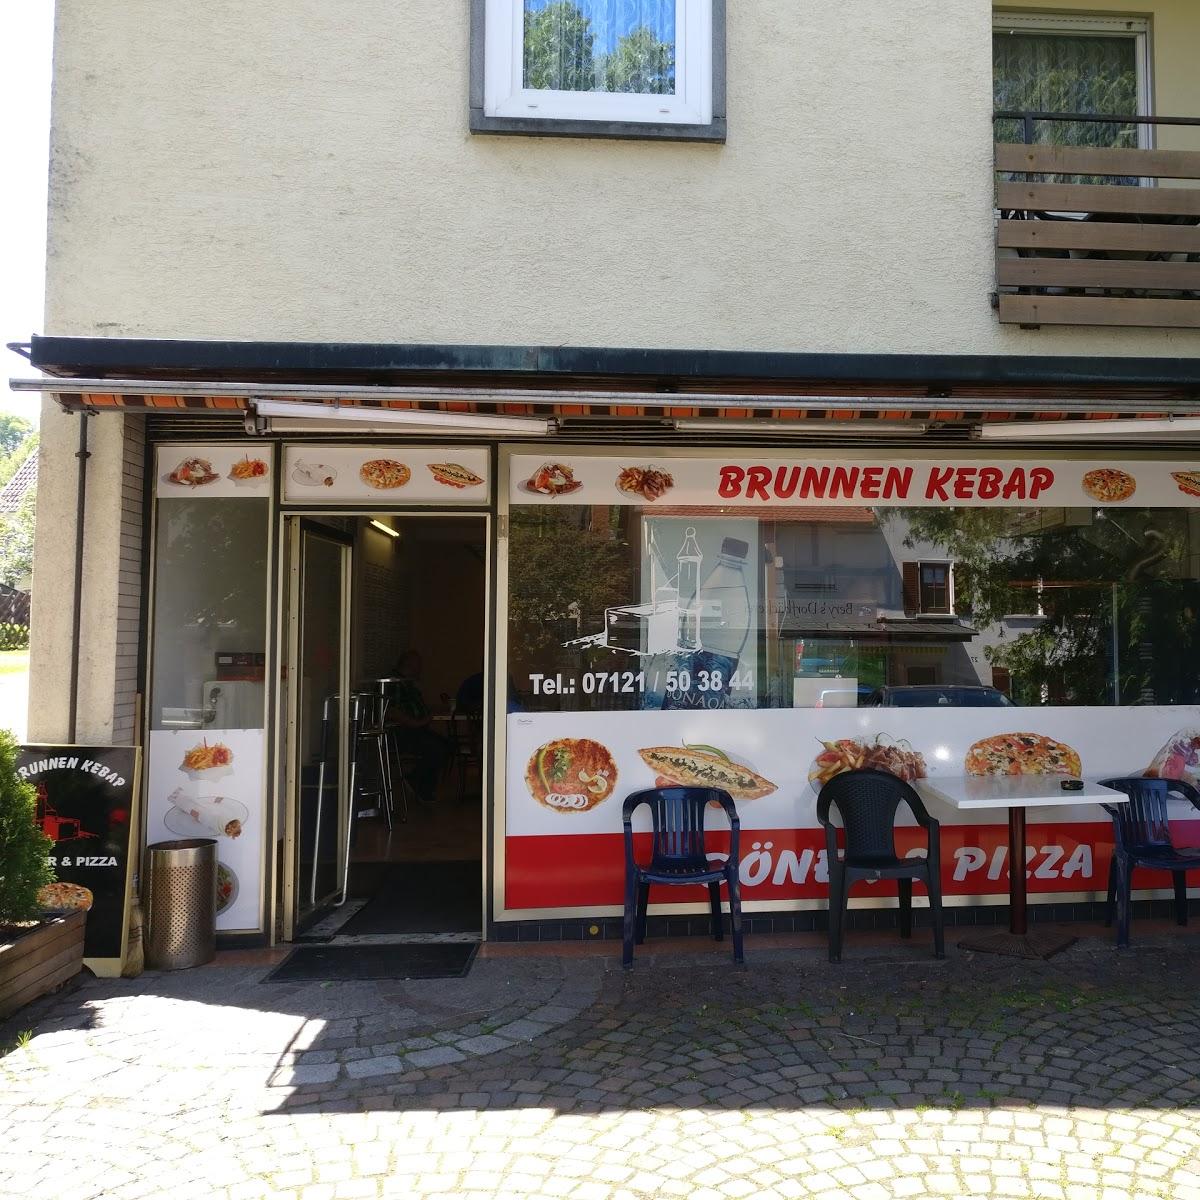 Restaurant "Brunnen Kebap" in  Wannweil